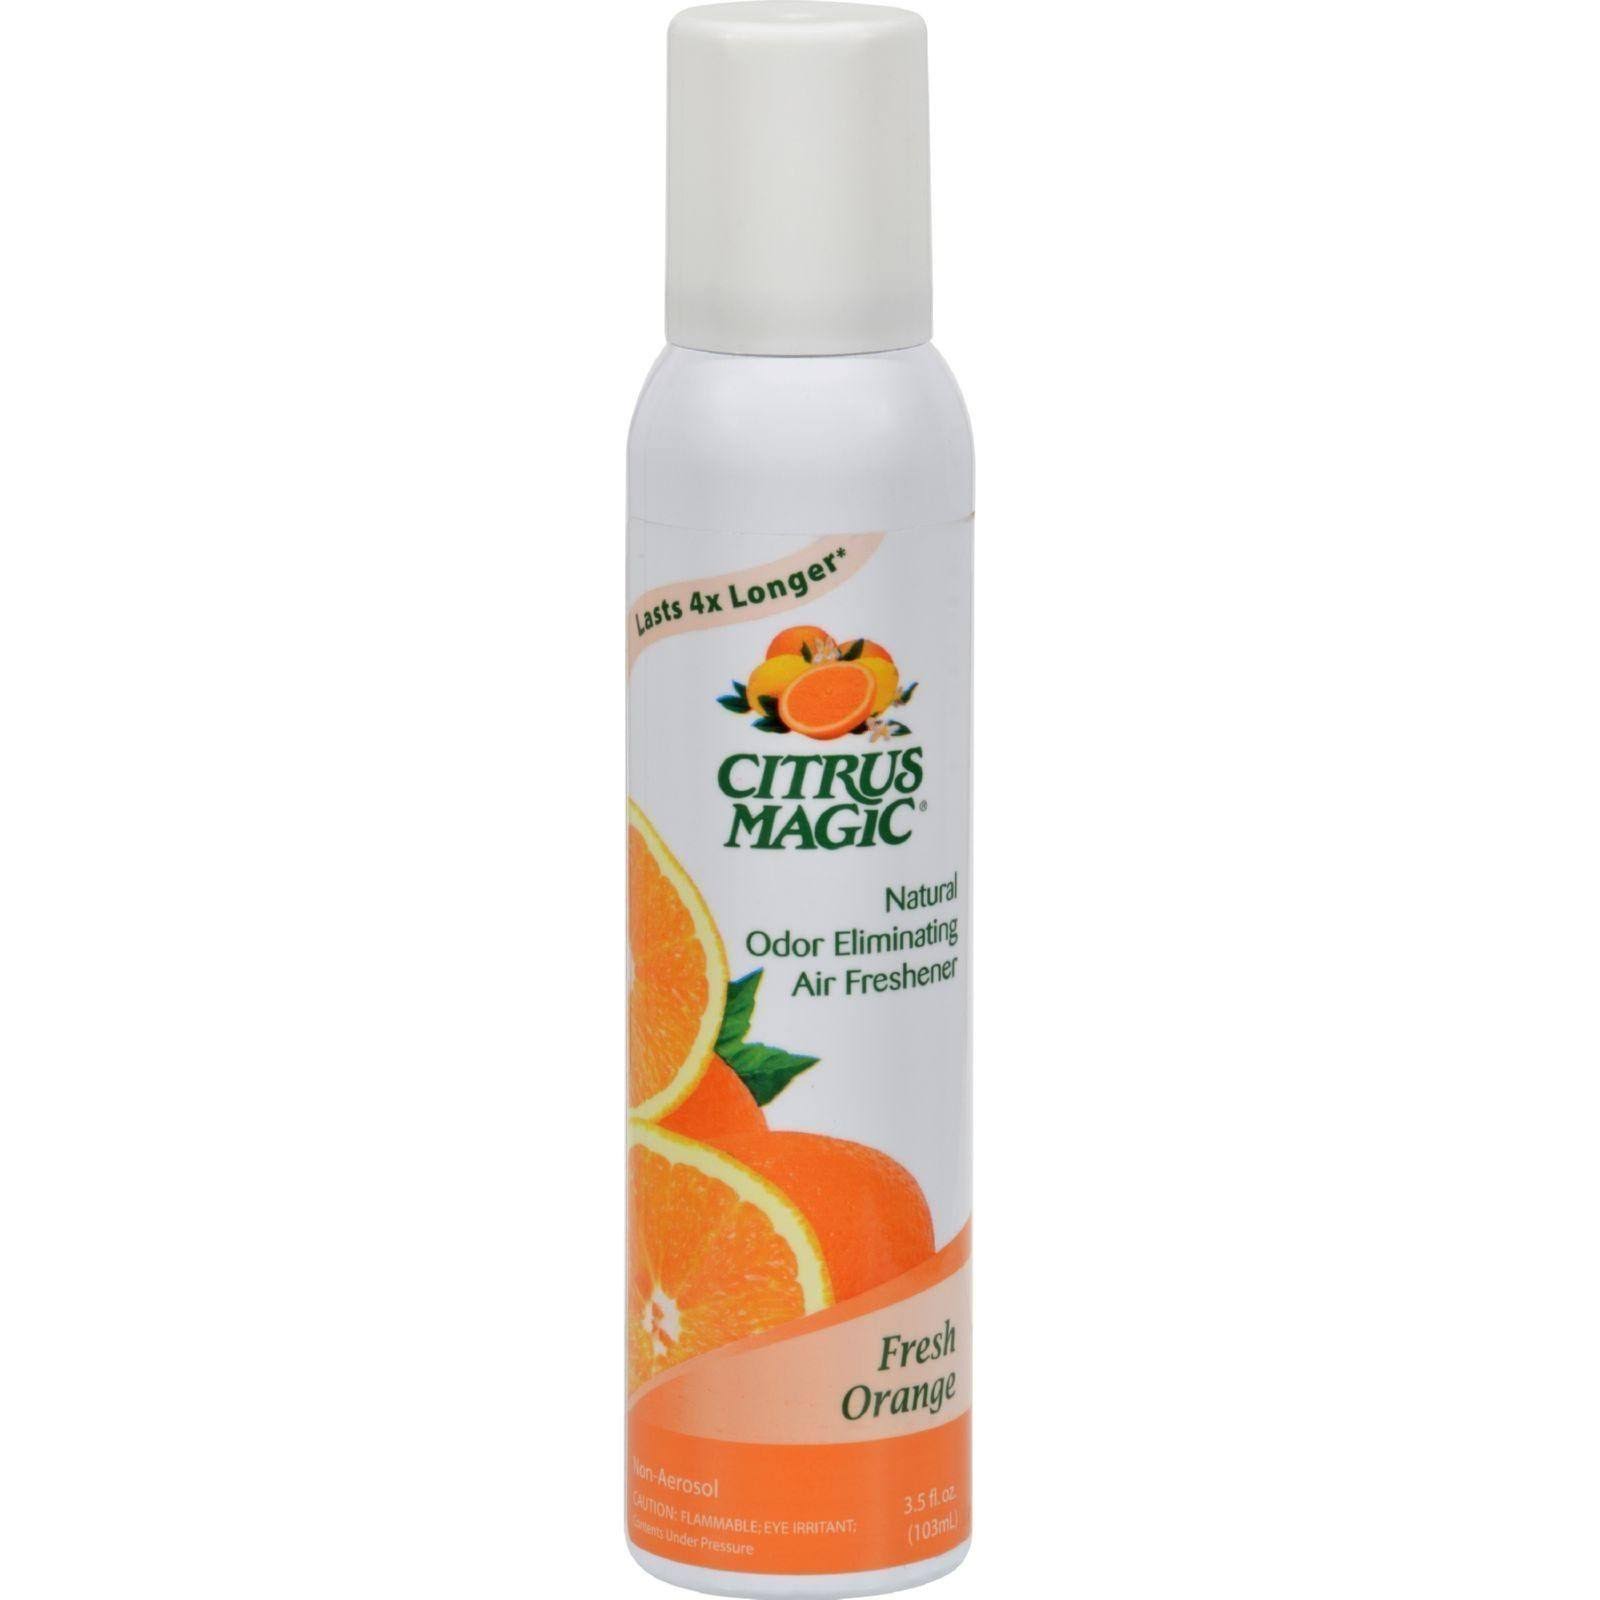 Citrus Magic Air Freshener - Orange, 3.5oz